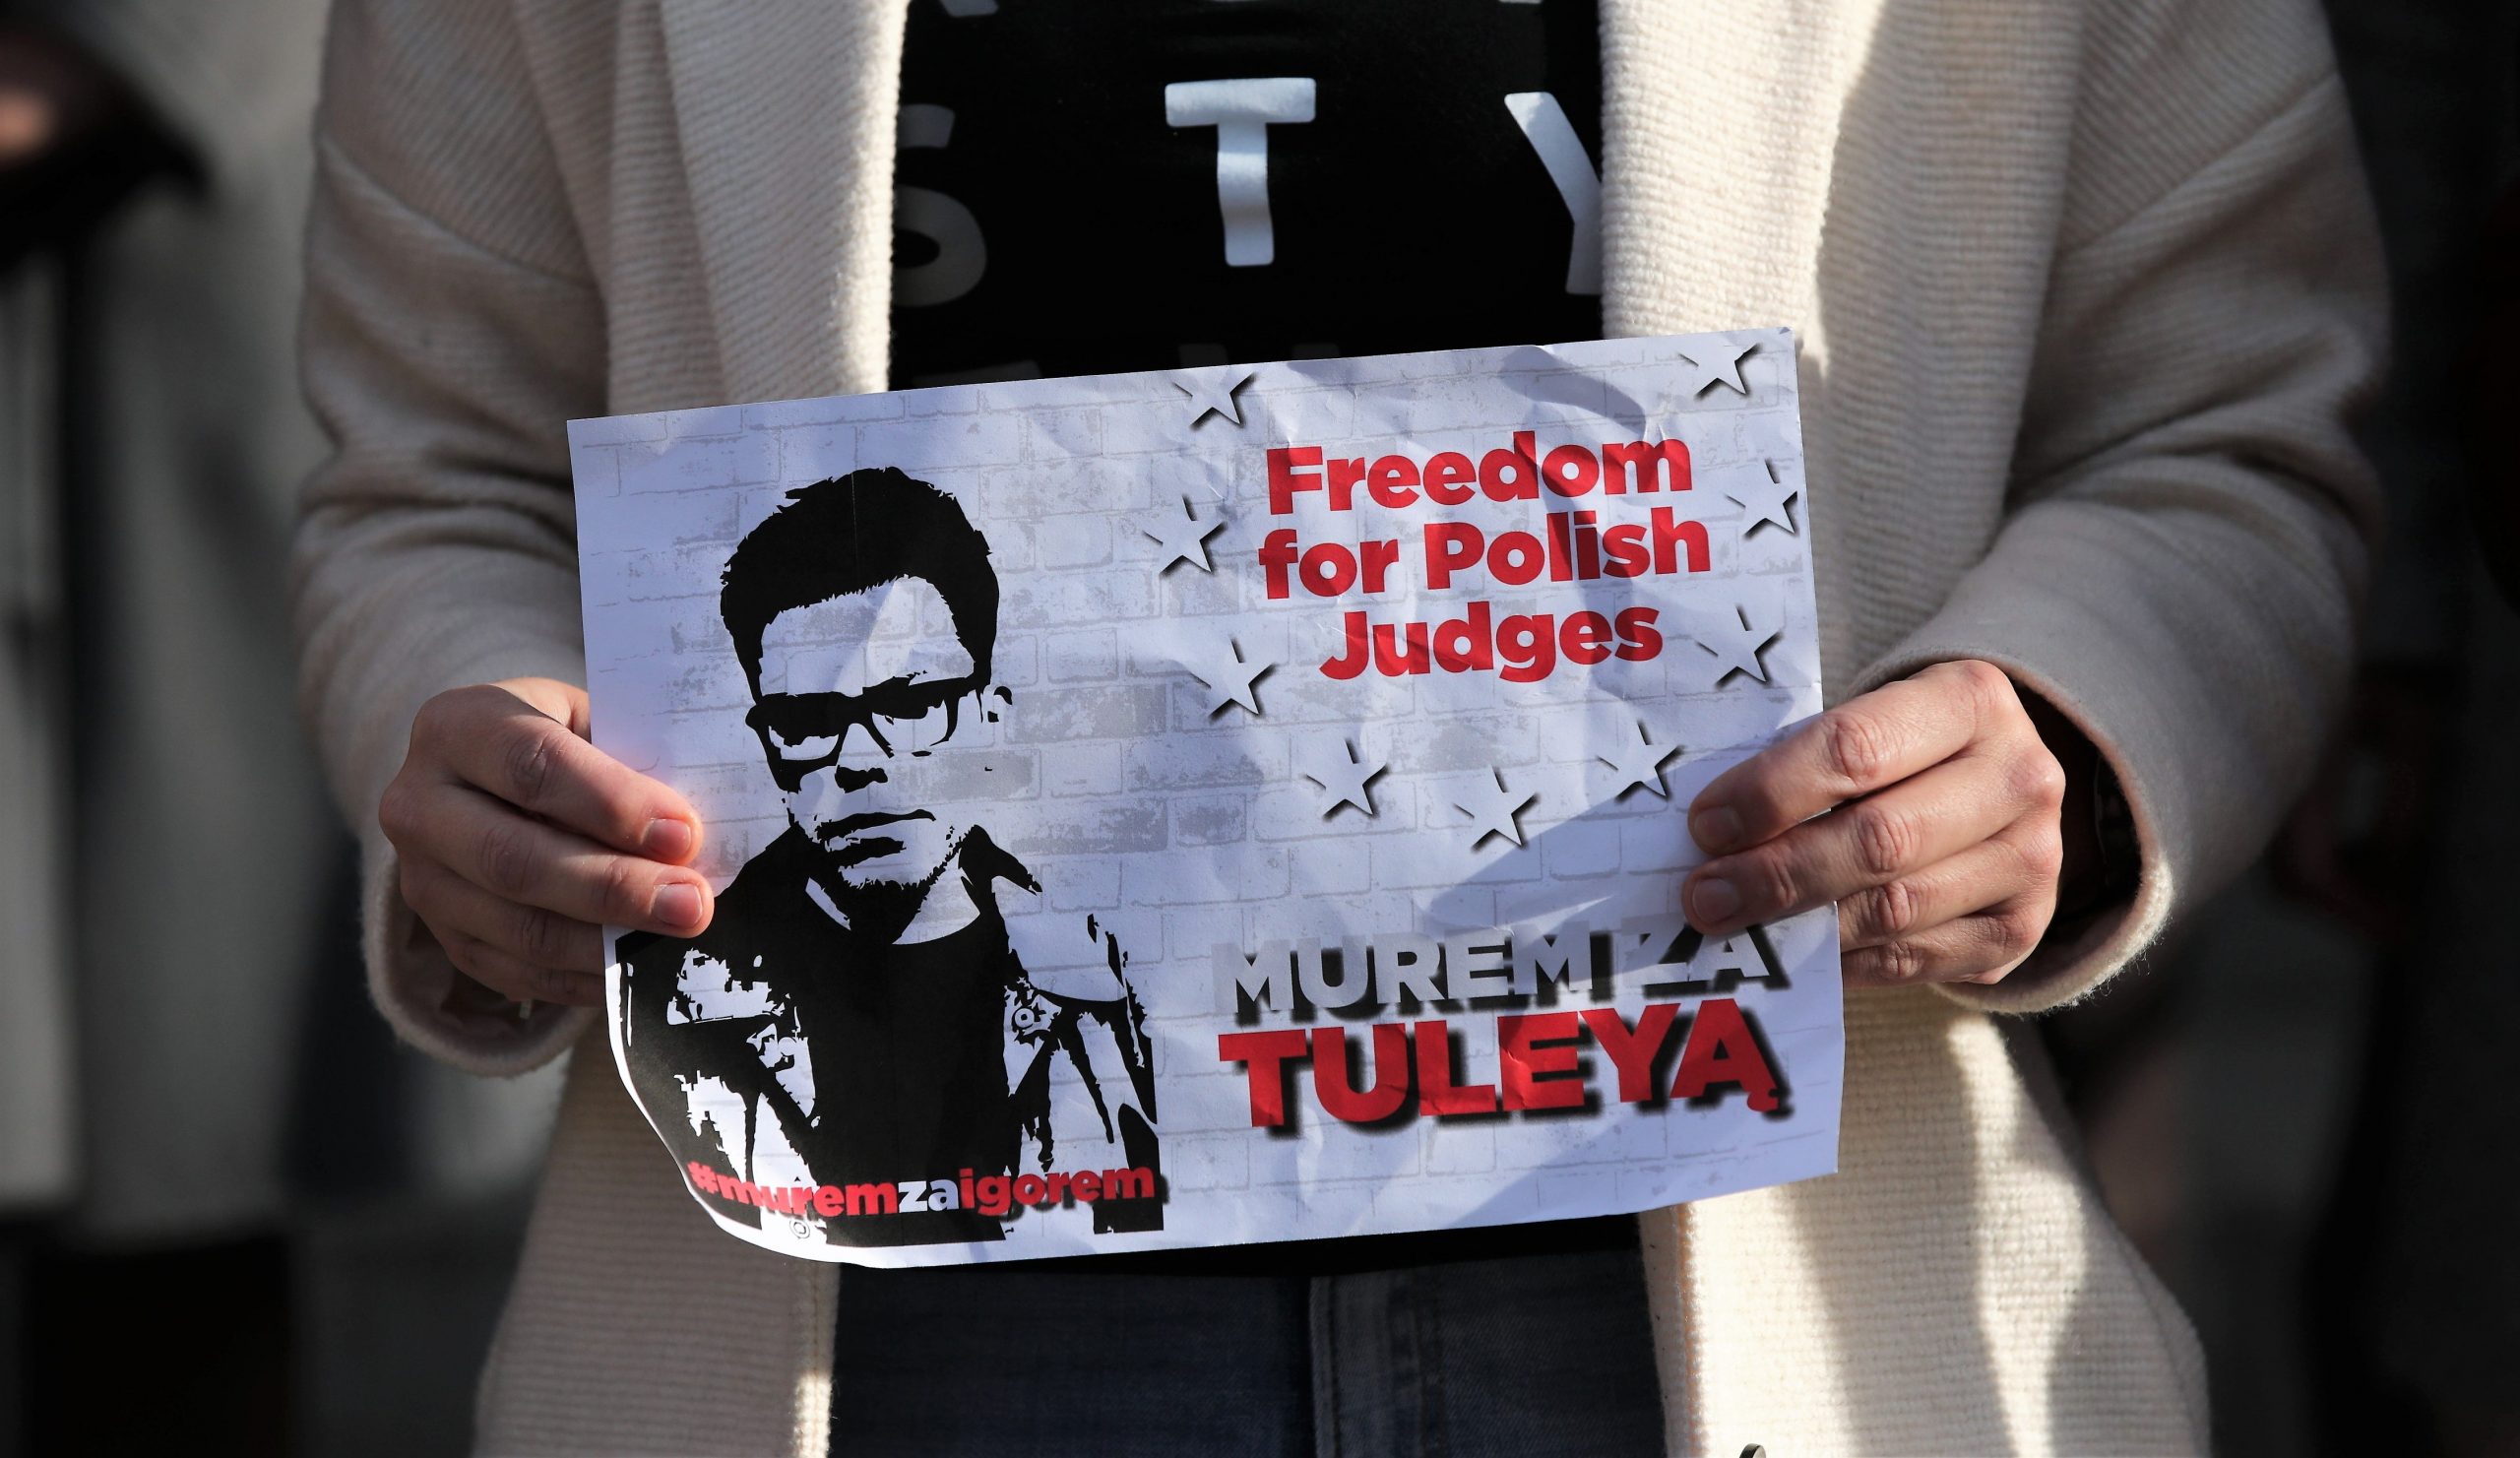 Polski sędzia, który skrytykował rząd, uniemożliwił mu powrót do pracy po uchyleniu zawieszenia